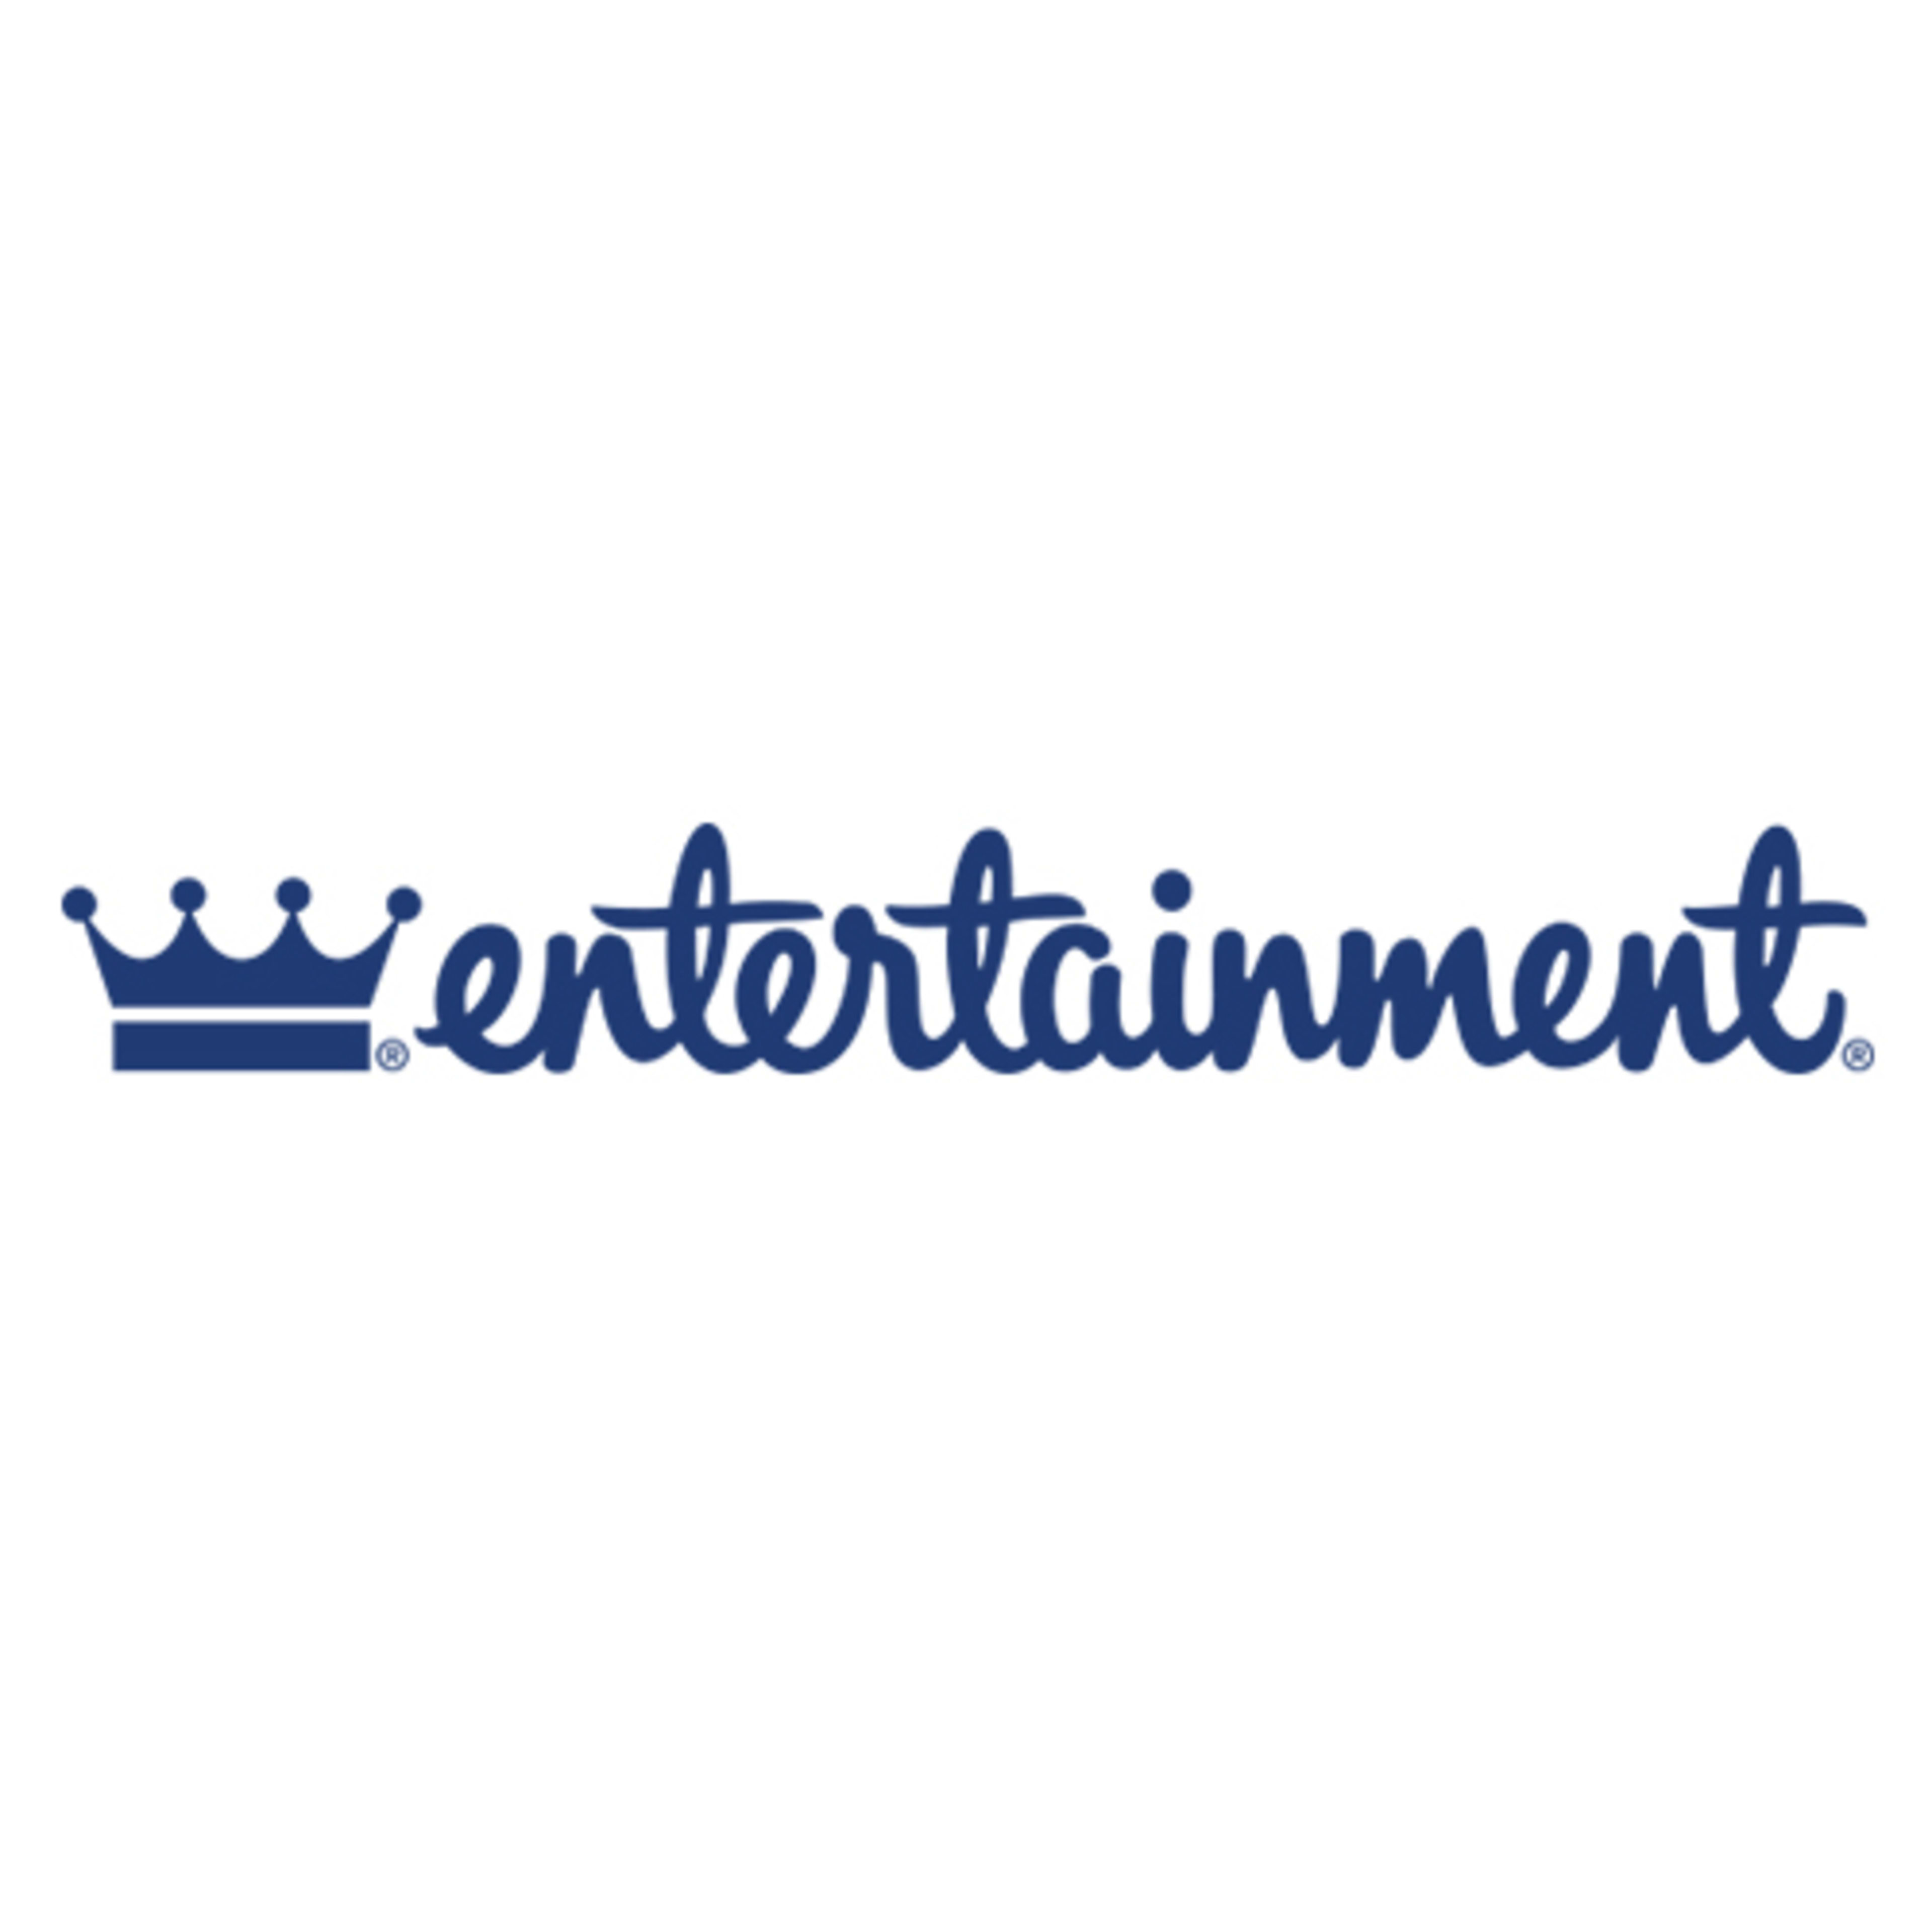 Entertainment.com Code